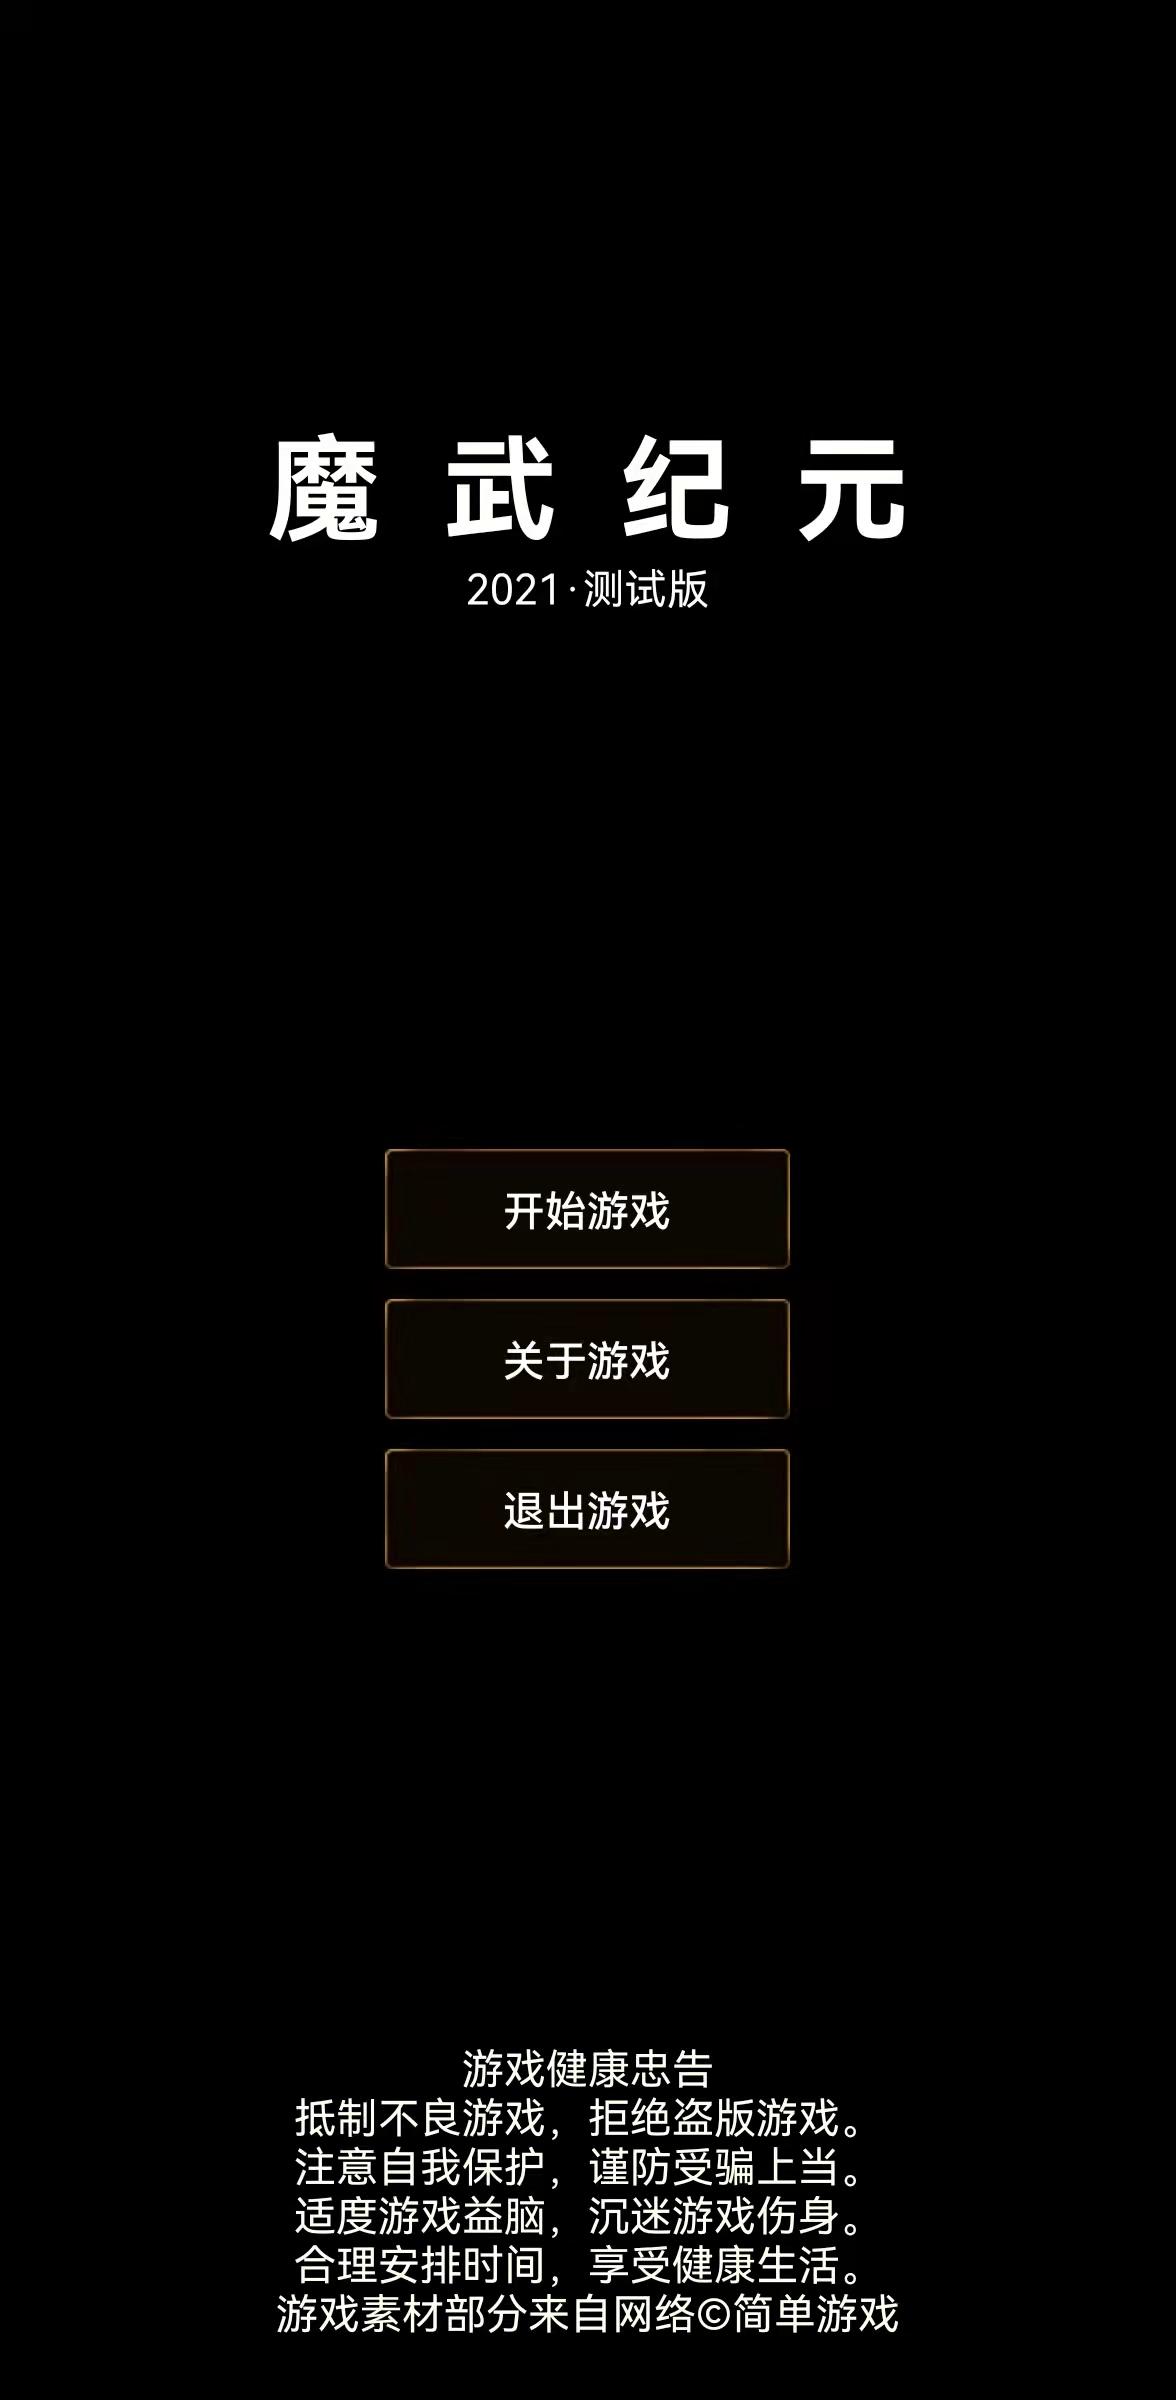 Screenshot 1 of โม วู: ชั่วนิรันดร์ 23.9.20